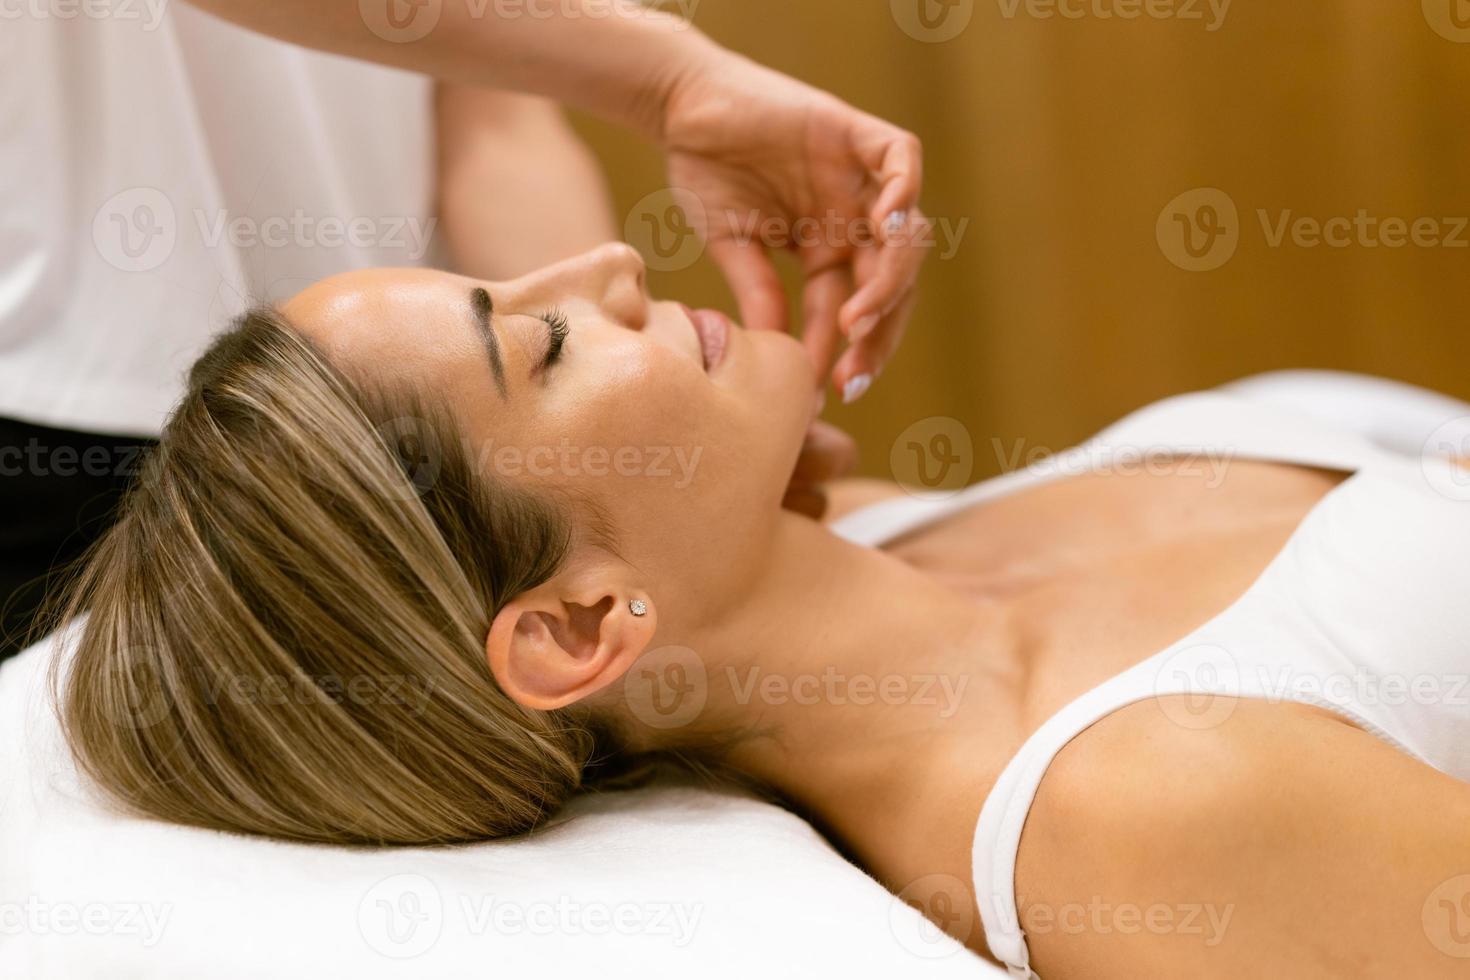 mulher de meia-idade, tendo uma massagem na cabeça em um salão de beleza. foto